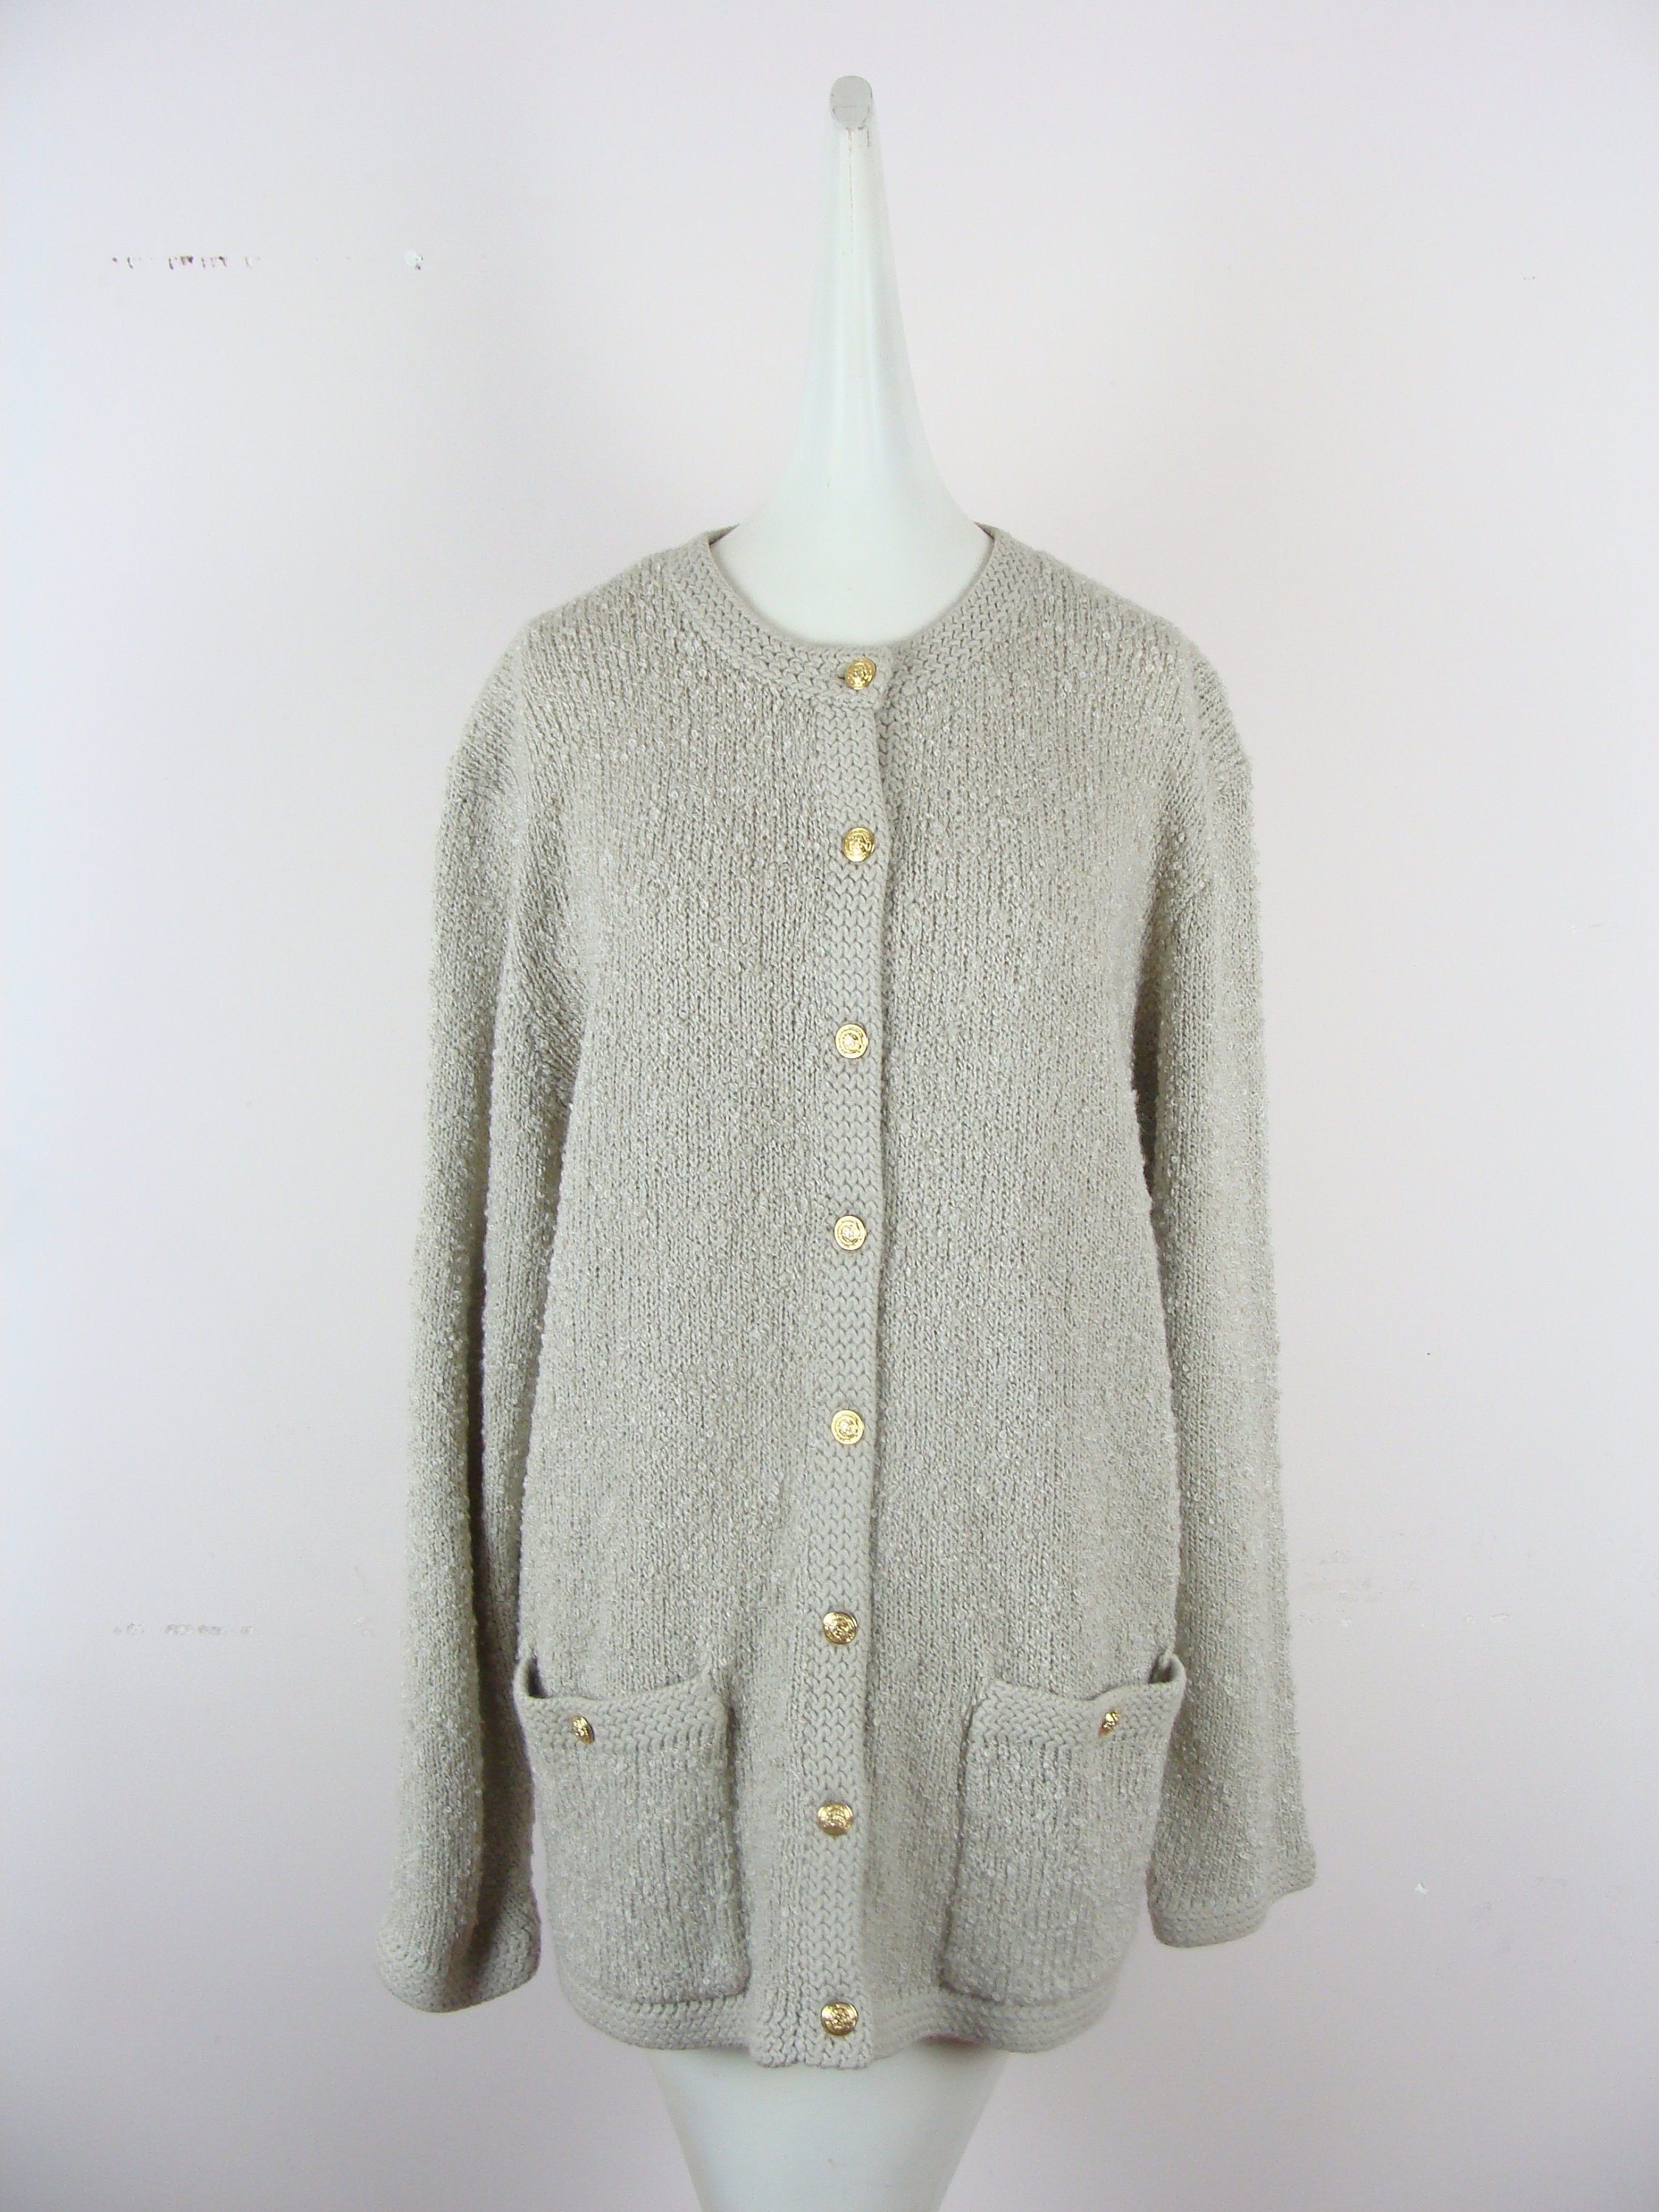 Vintage Boucle Sweater 80s Oversized Cardigan Cozy Warm | Etsy